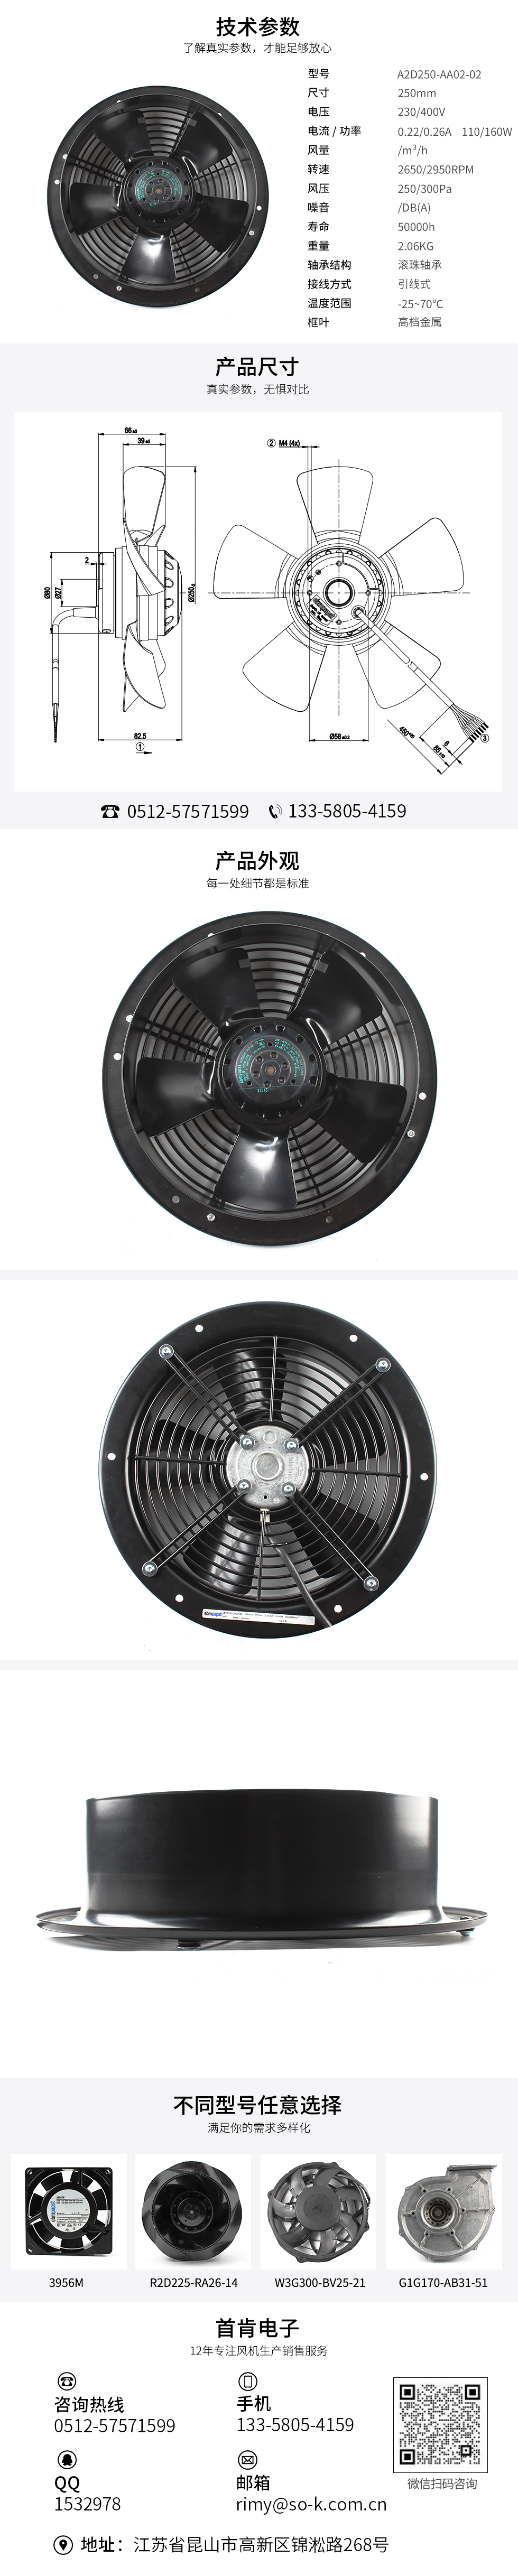 防尘散热风扇,散热器交流风扇,电控柜轴流风扇,A2D250-AA02-02